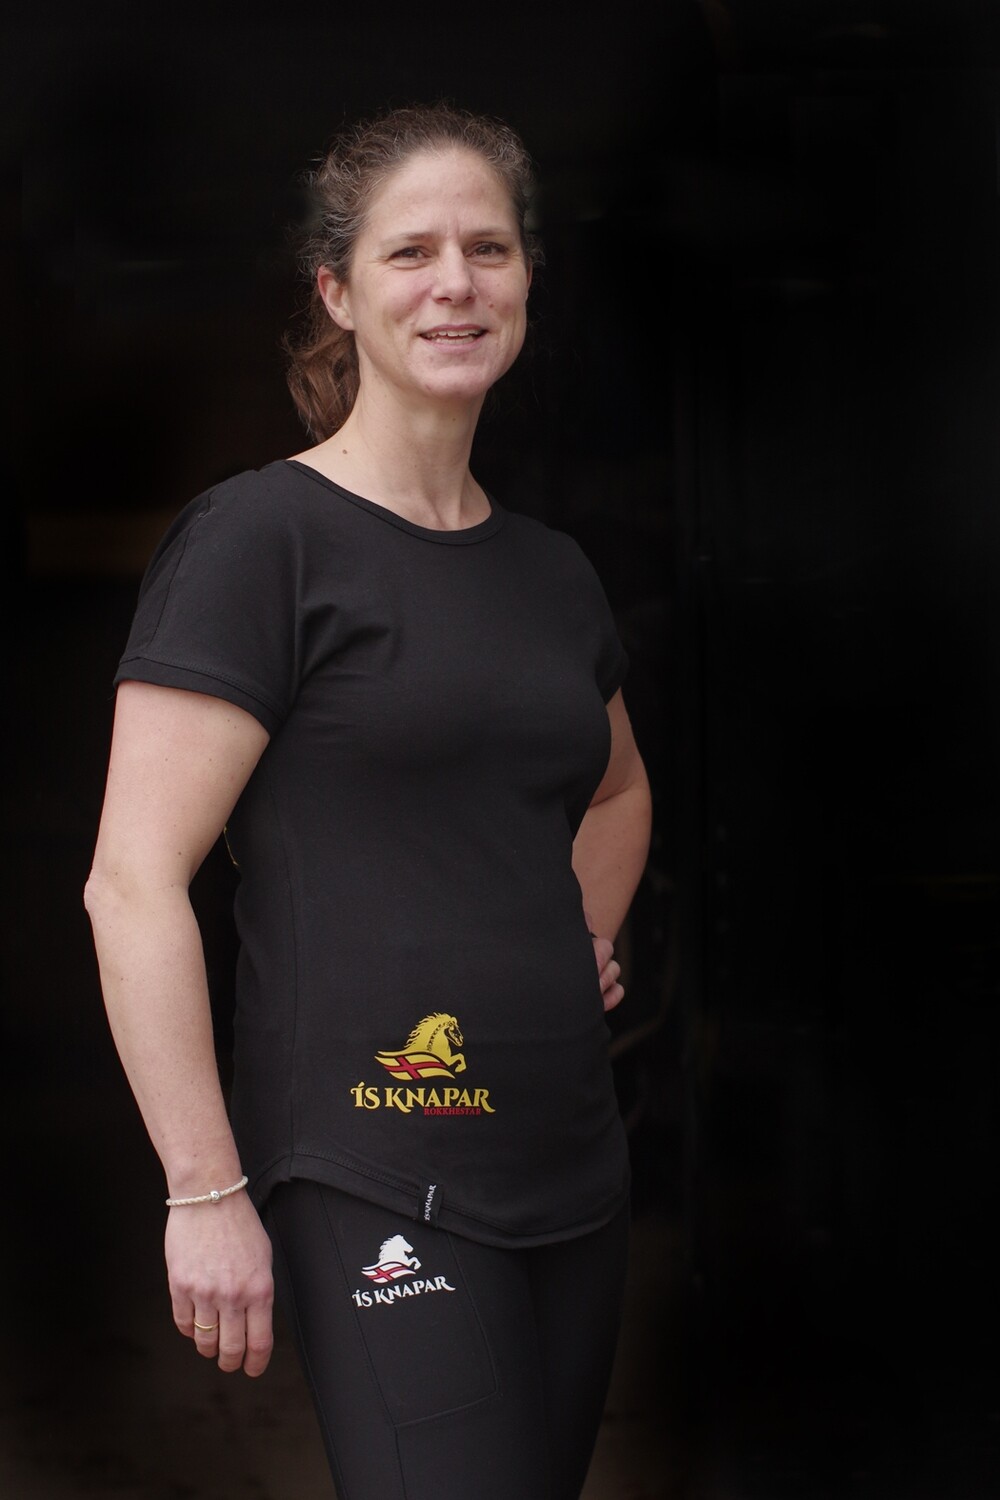 HESTAHAUS - ein Damenshirt im Rock-Metal-Design ROKKHESTAR